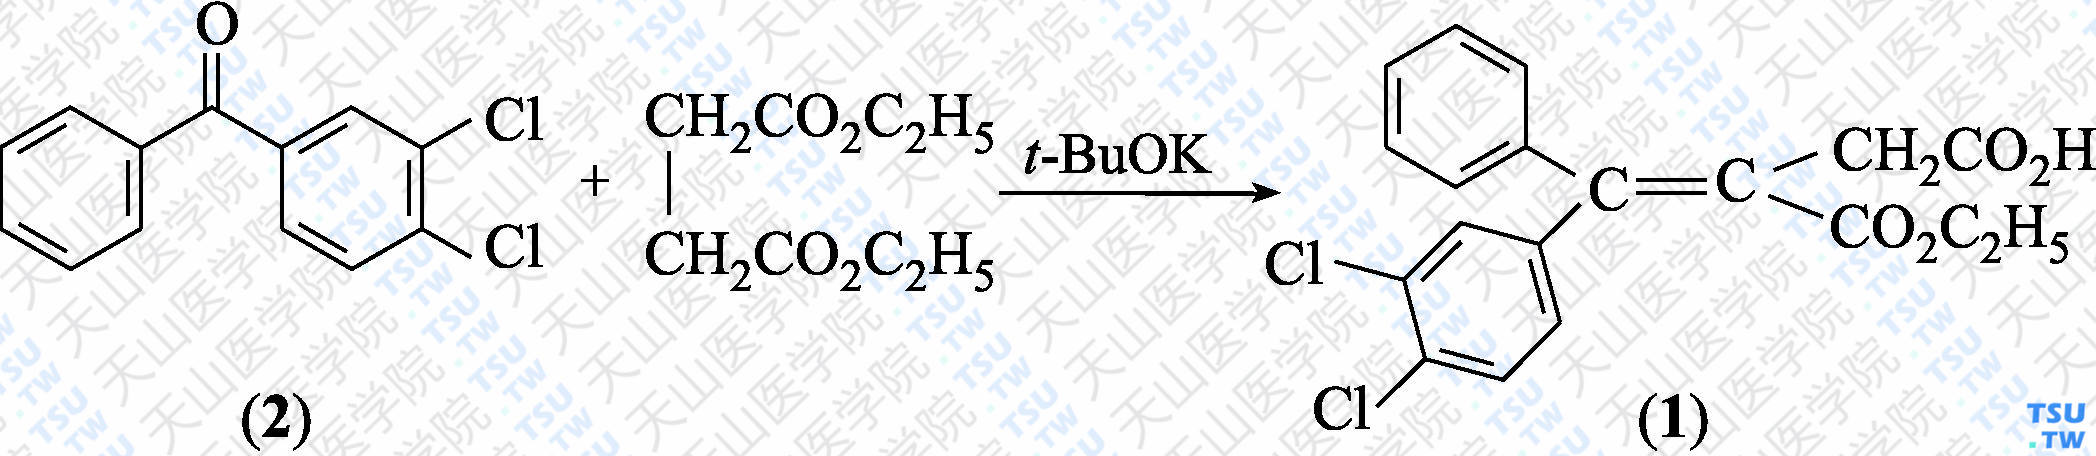 4-（3，4-二氯苯基）-3-（乙氧羰基）-4-苯基丁-3-烯酸（分子式：C<sub>19</sub>H<sub>16</sub> Cl<sub>2</sub>O<sub>4</sub>）的合成方法路线及其结构式